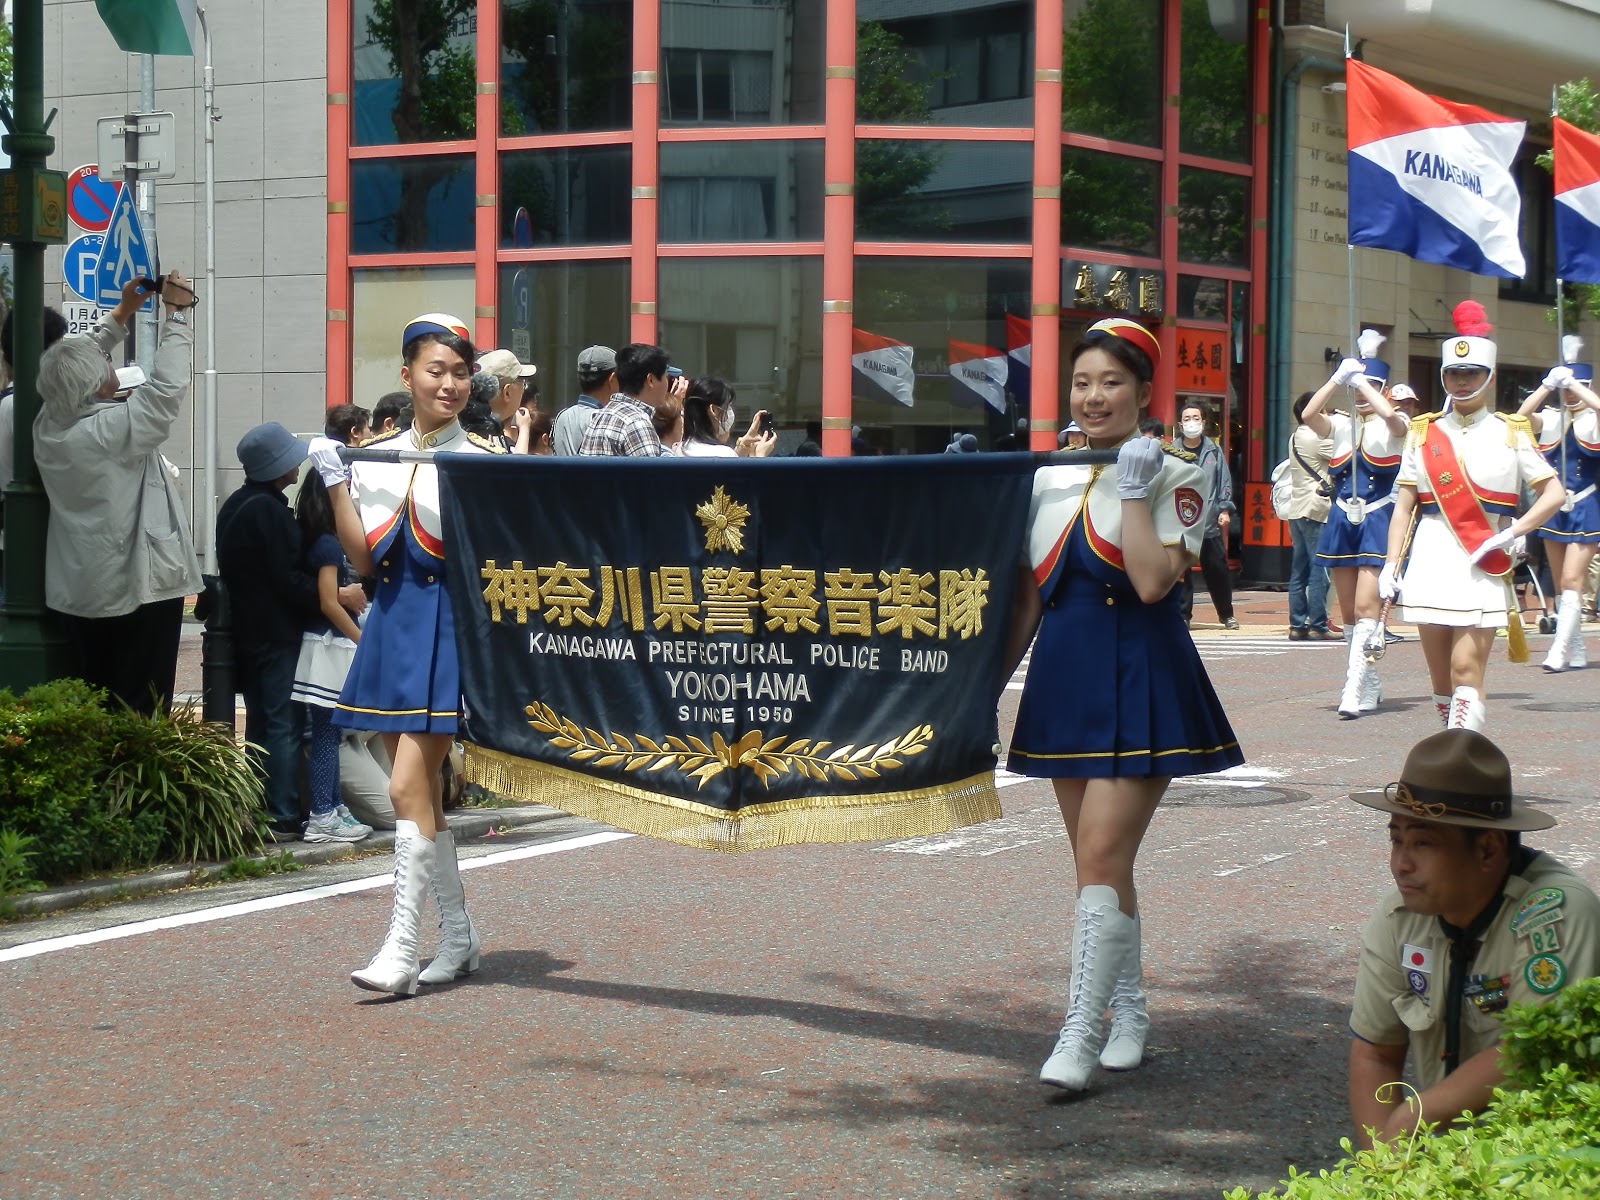 横浜開港記念みなと祭 第66回ザよこはまパレード 国際仮装行列 愚昧親爺記 ちぎれ雲きょうはどこへ行くのやら